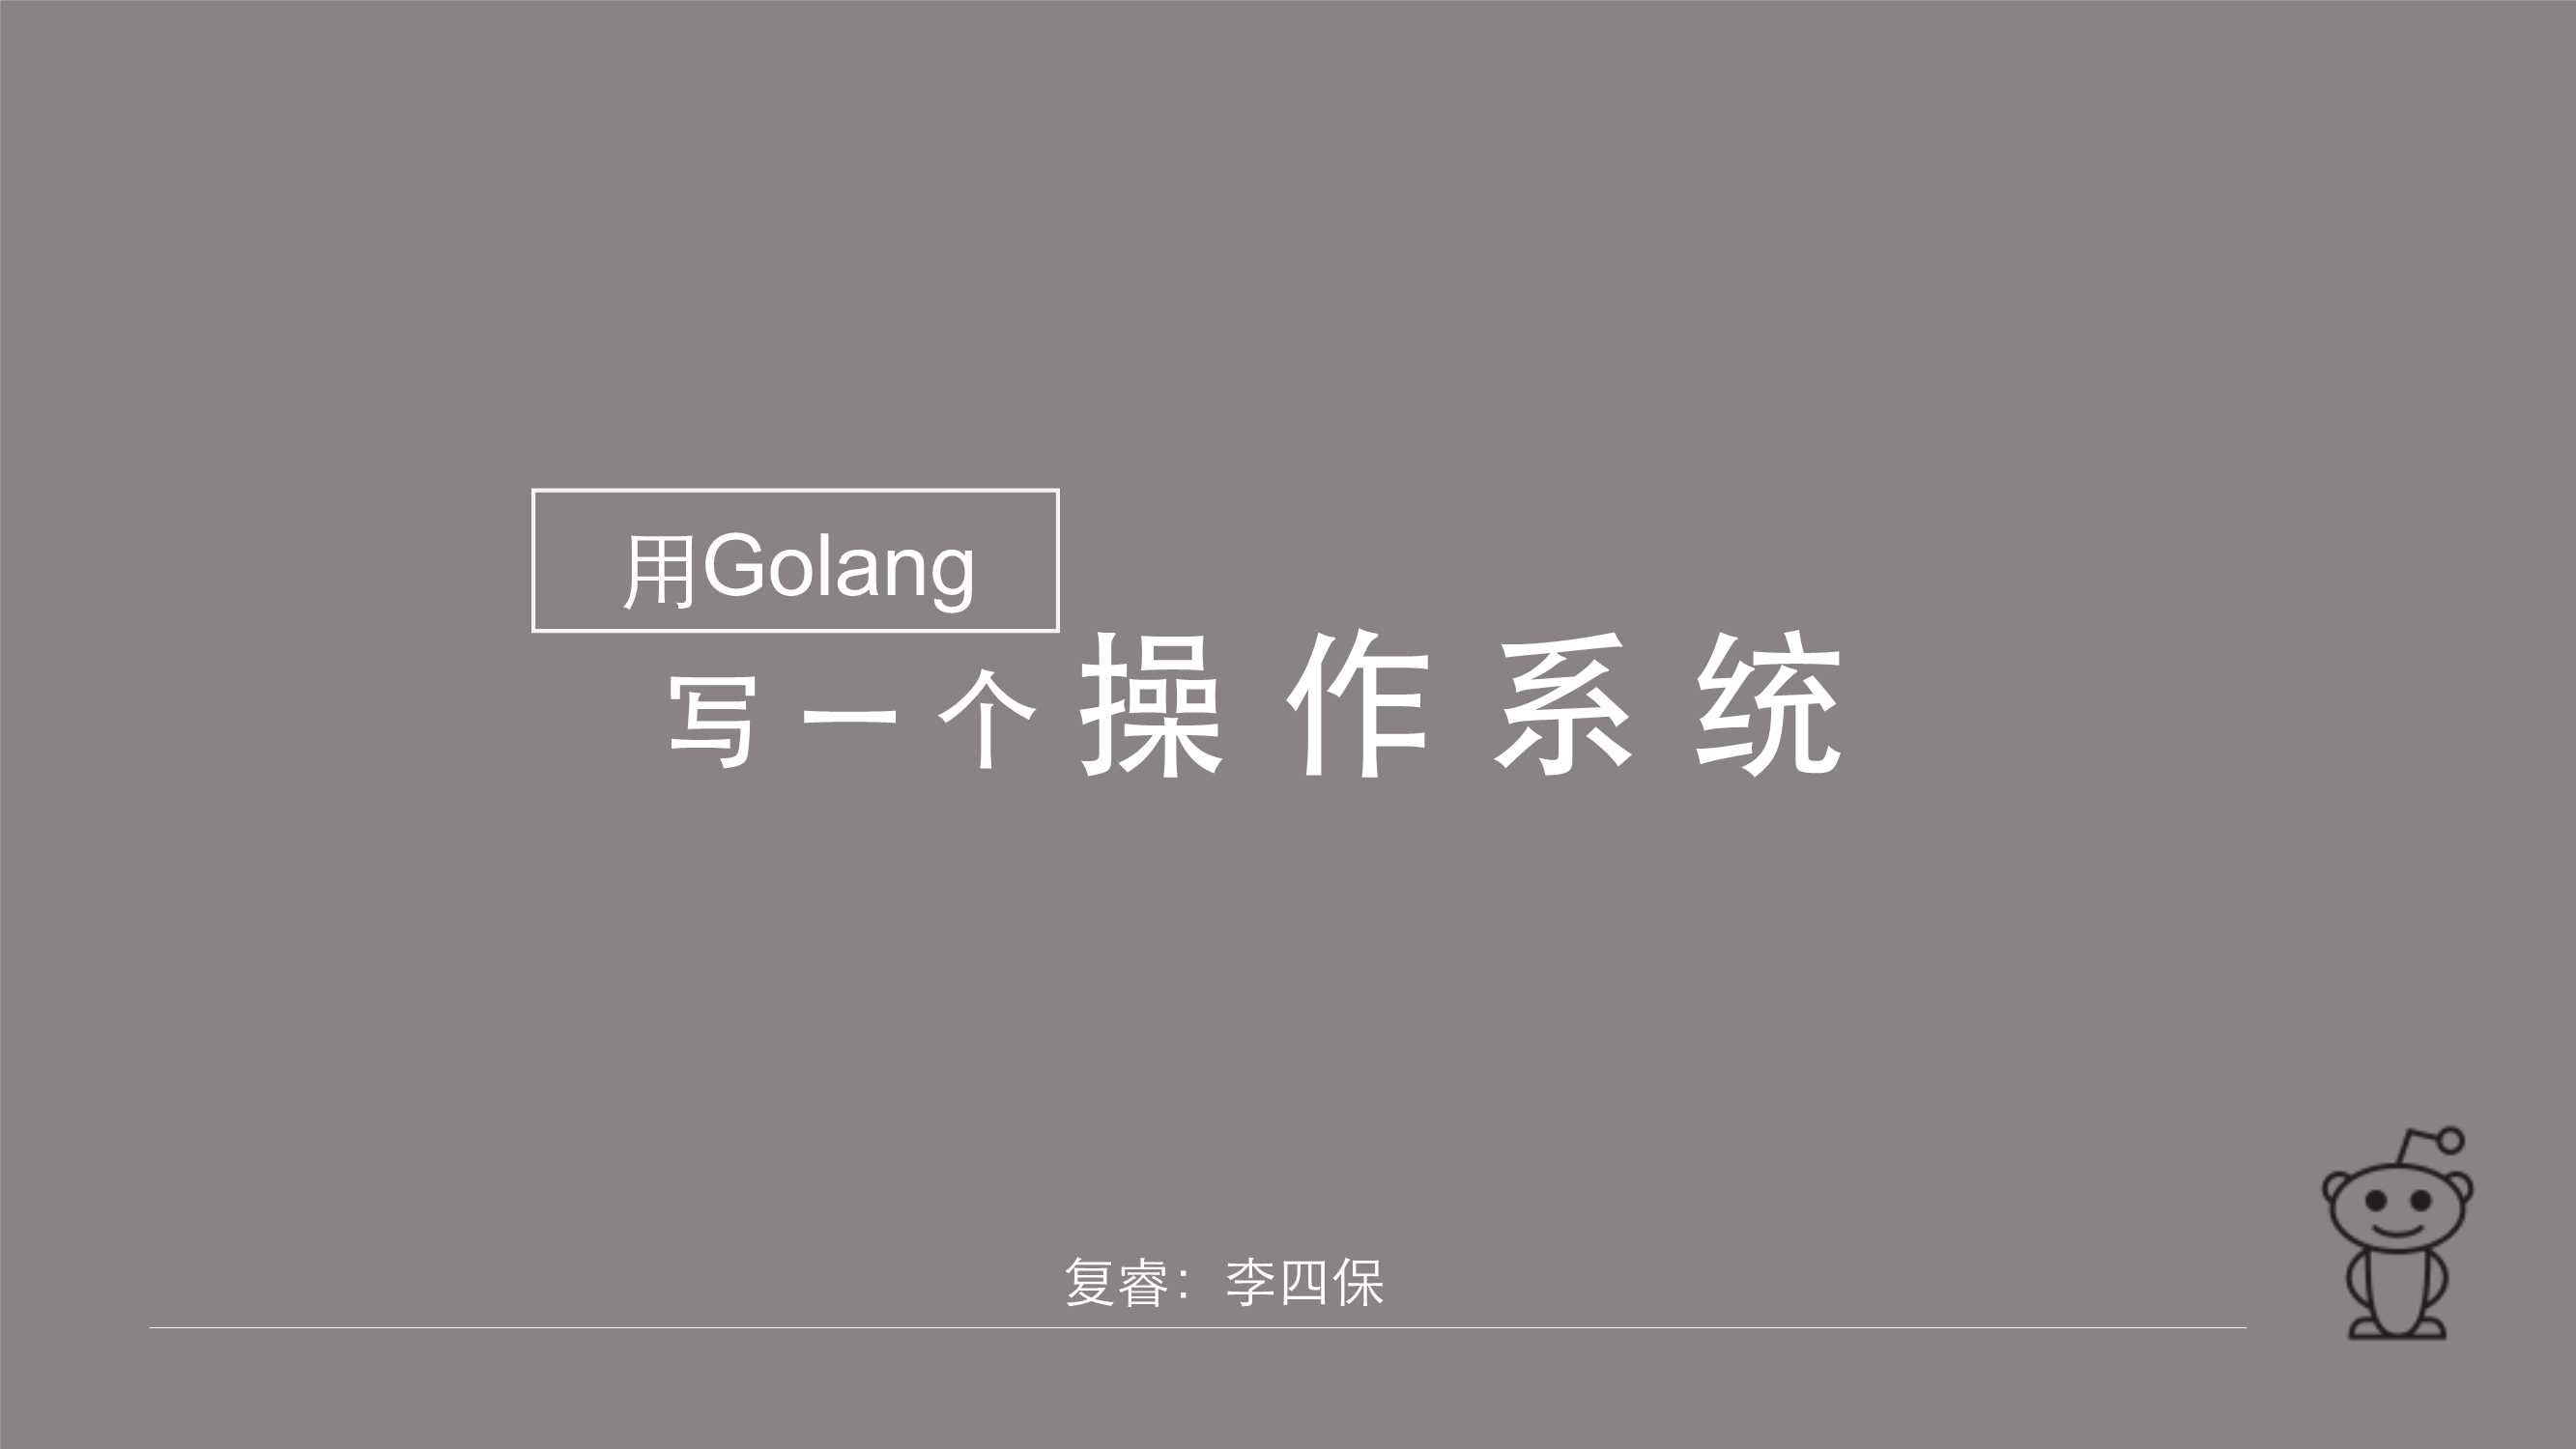 用golang写一个操作系统-2015-33页